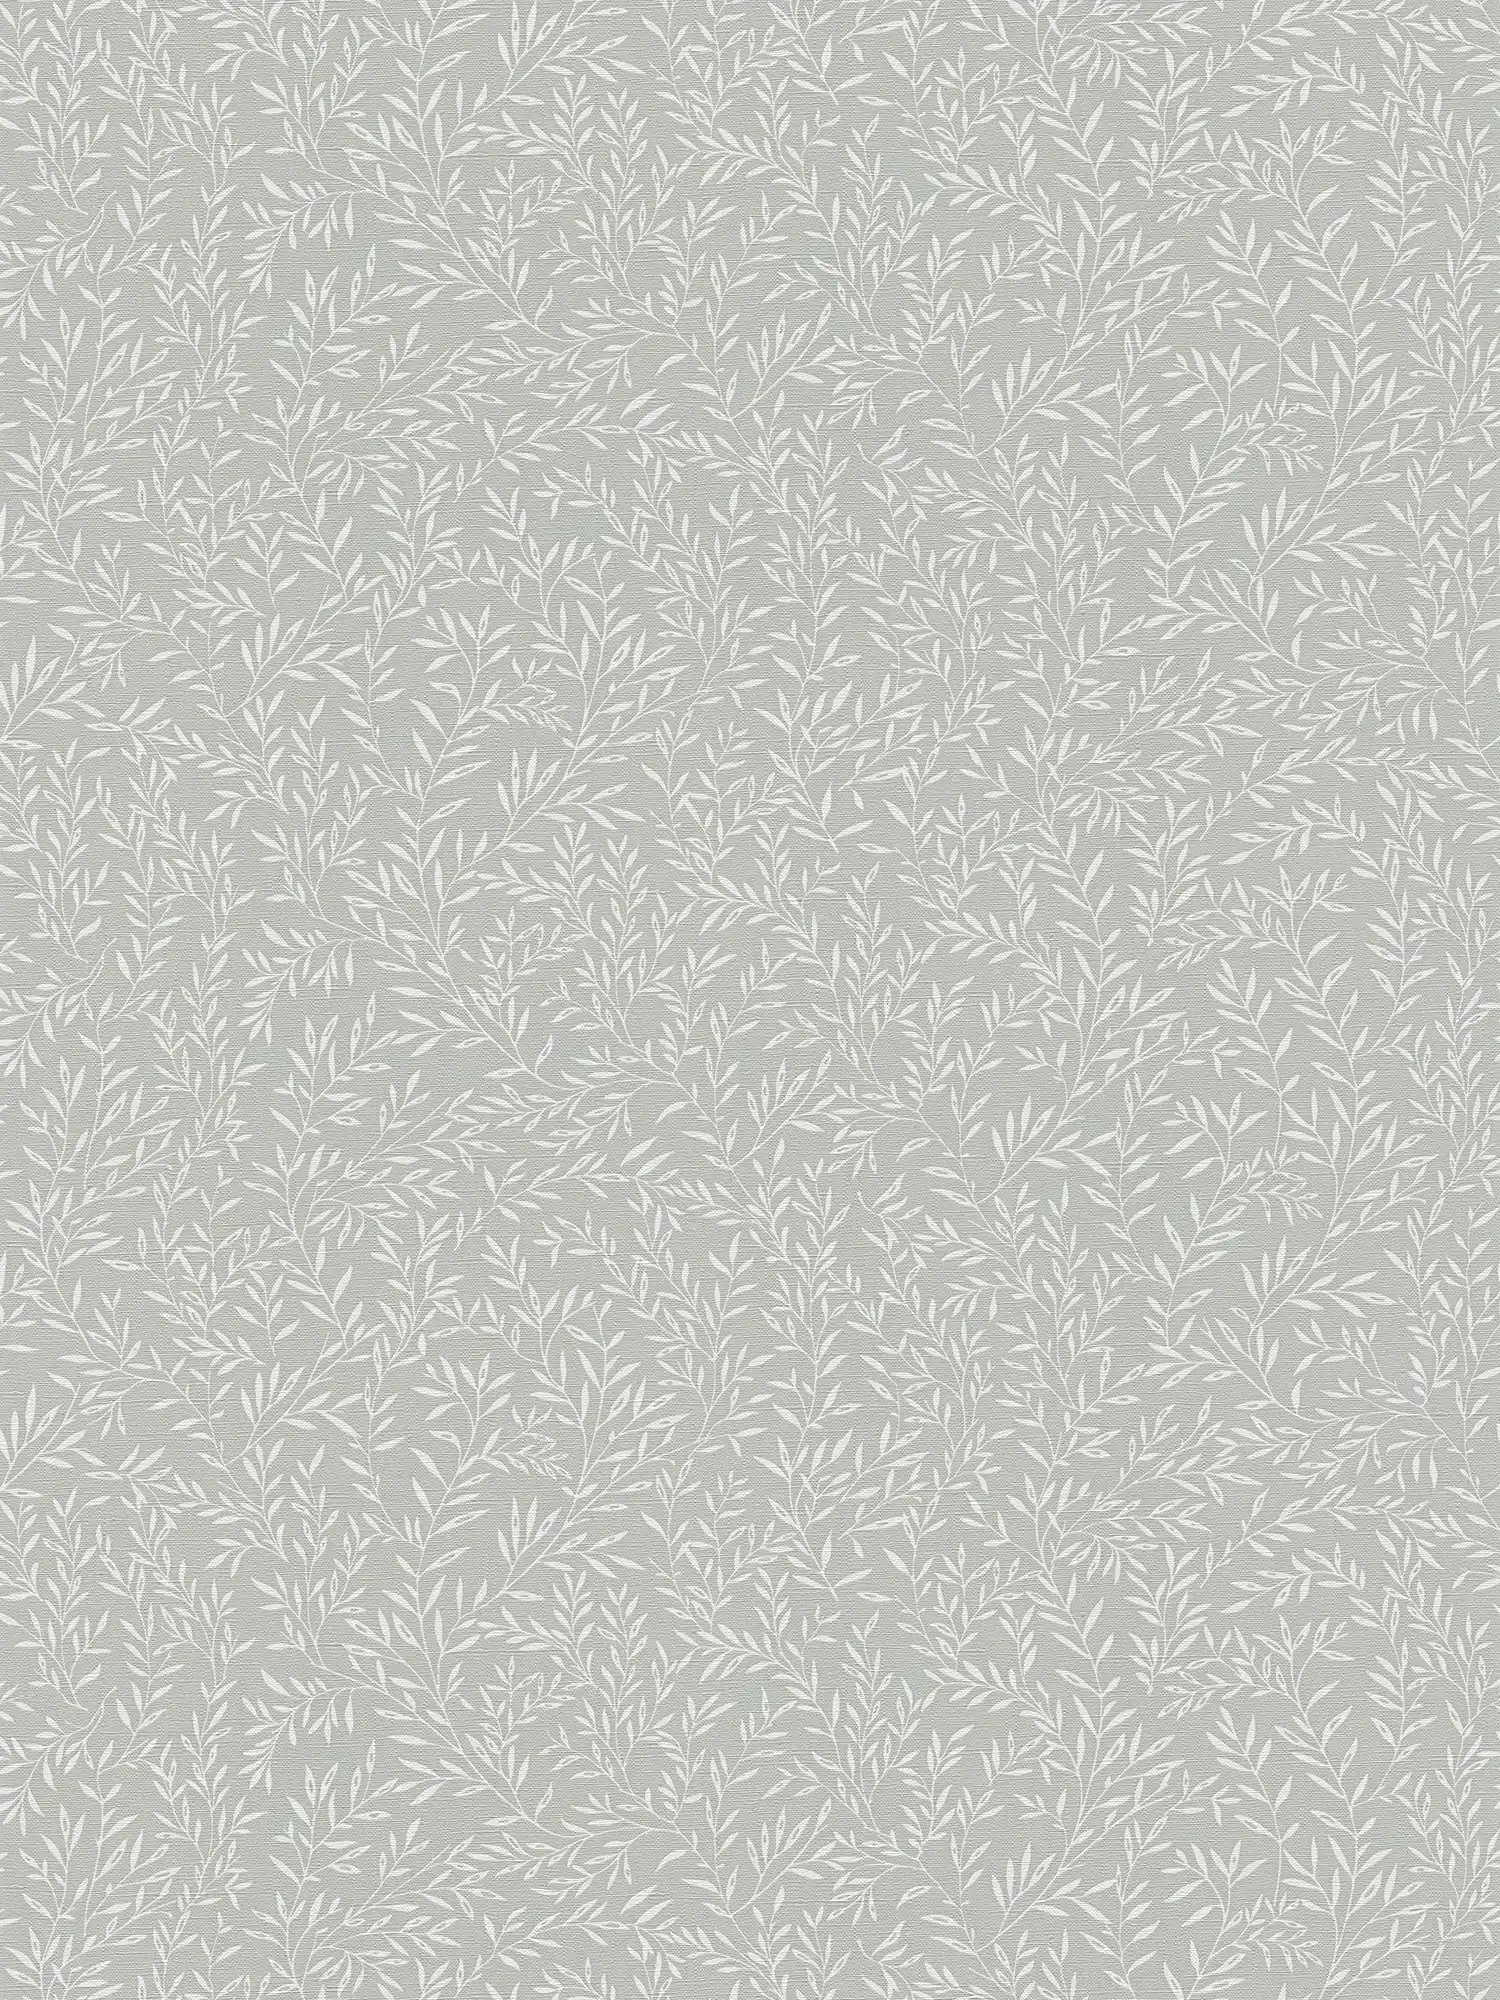 Tapete mit Blätterranken im Landhausstil – Grau, Weiß
